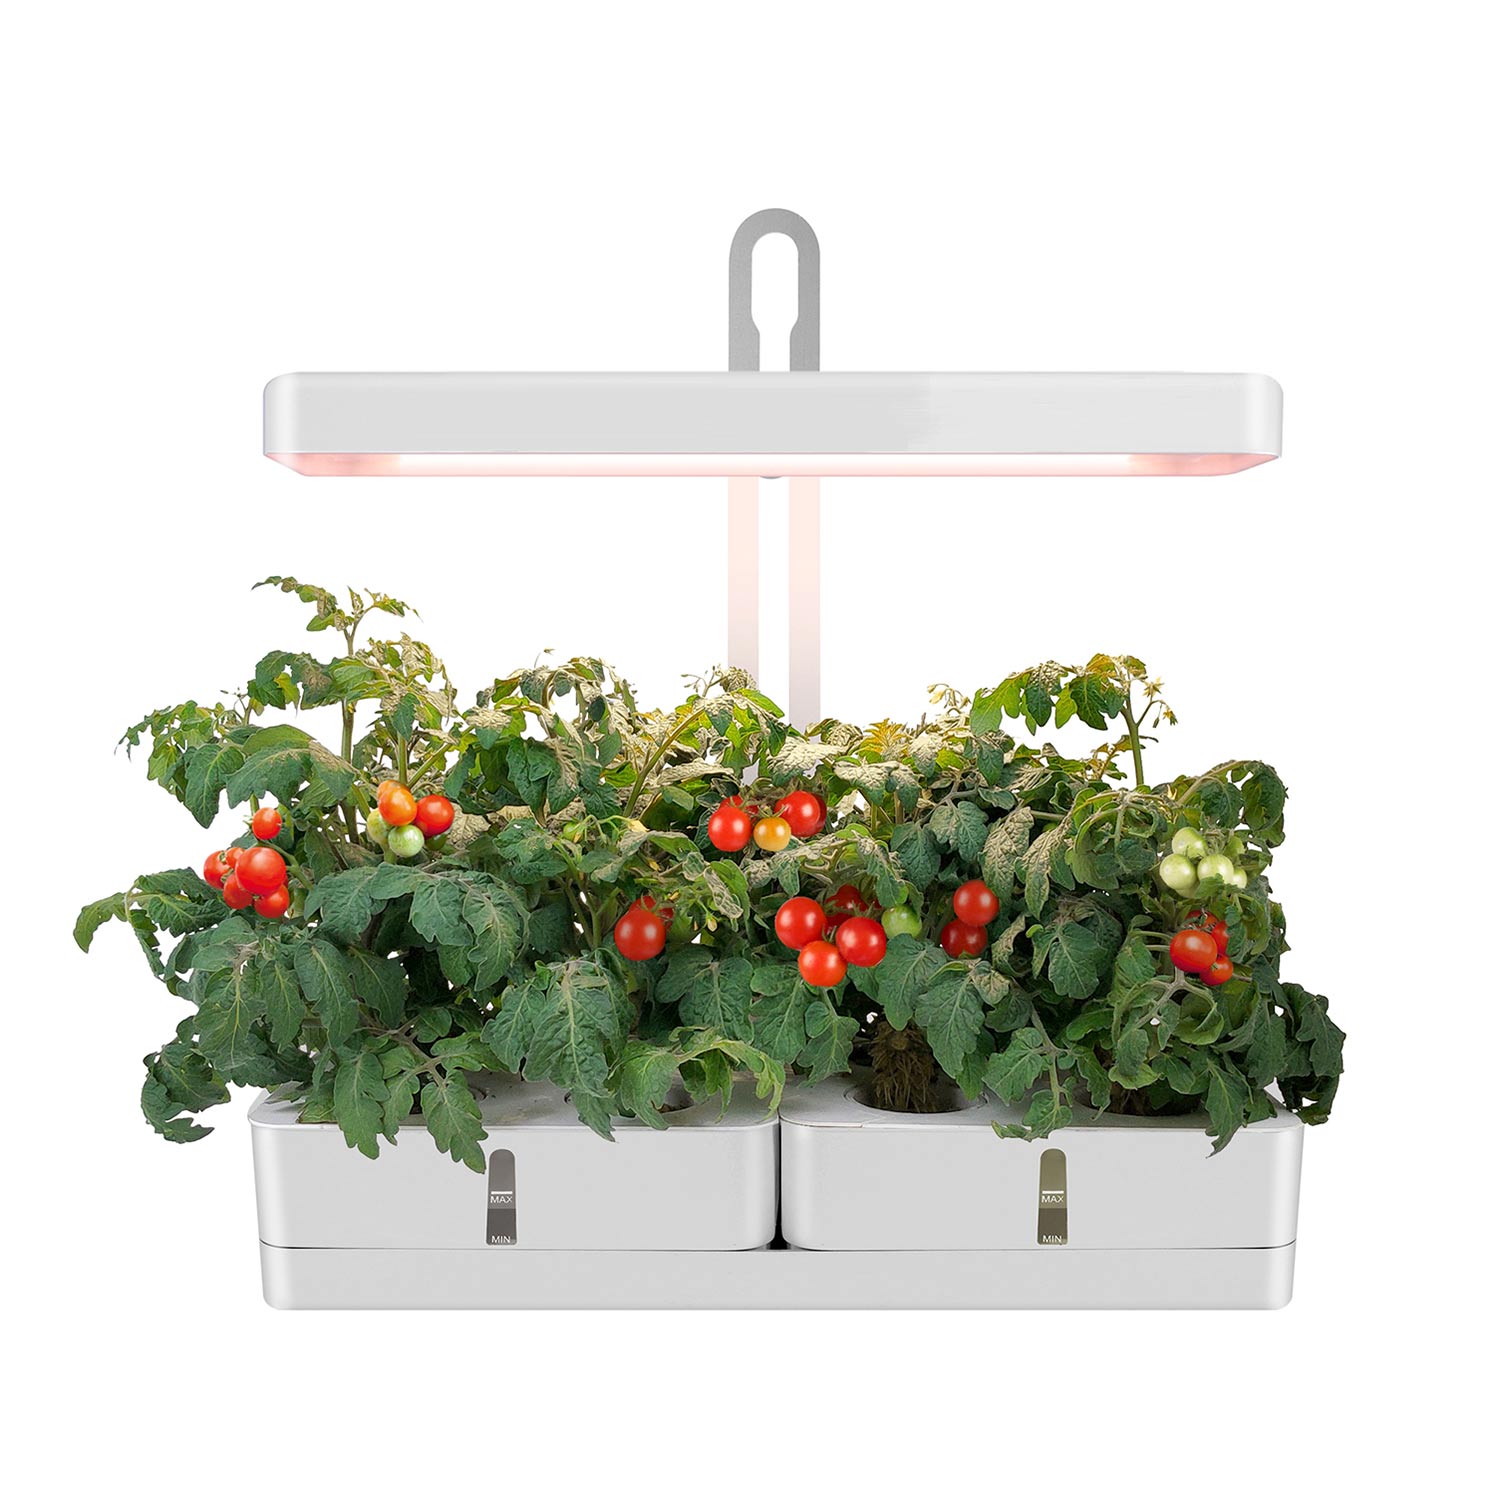 MG102 Indoor Hydroponic Plants Garden Herb Grow Light Indoor Vegetable Garden Kit